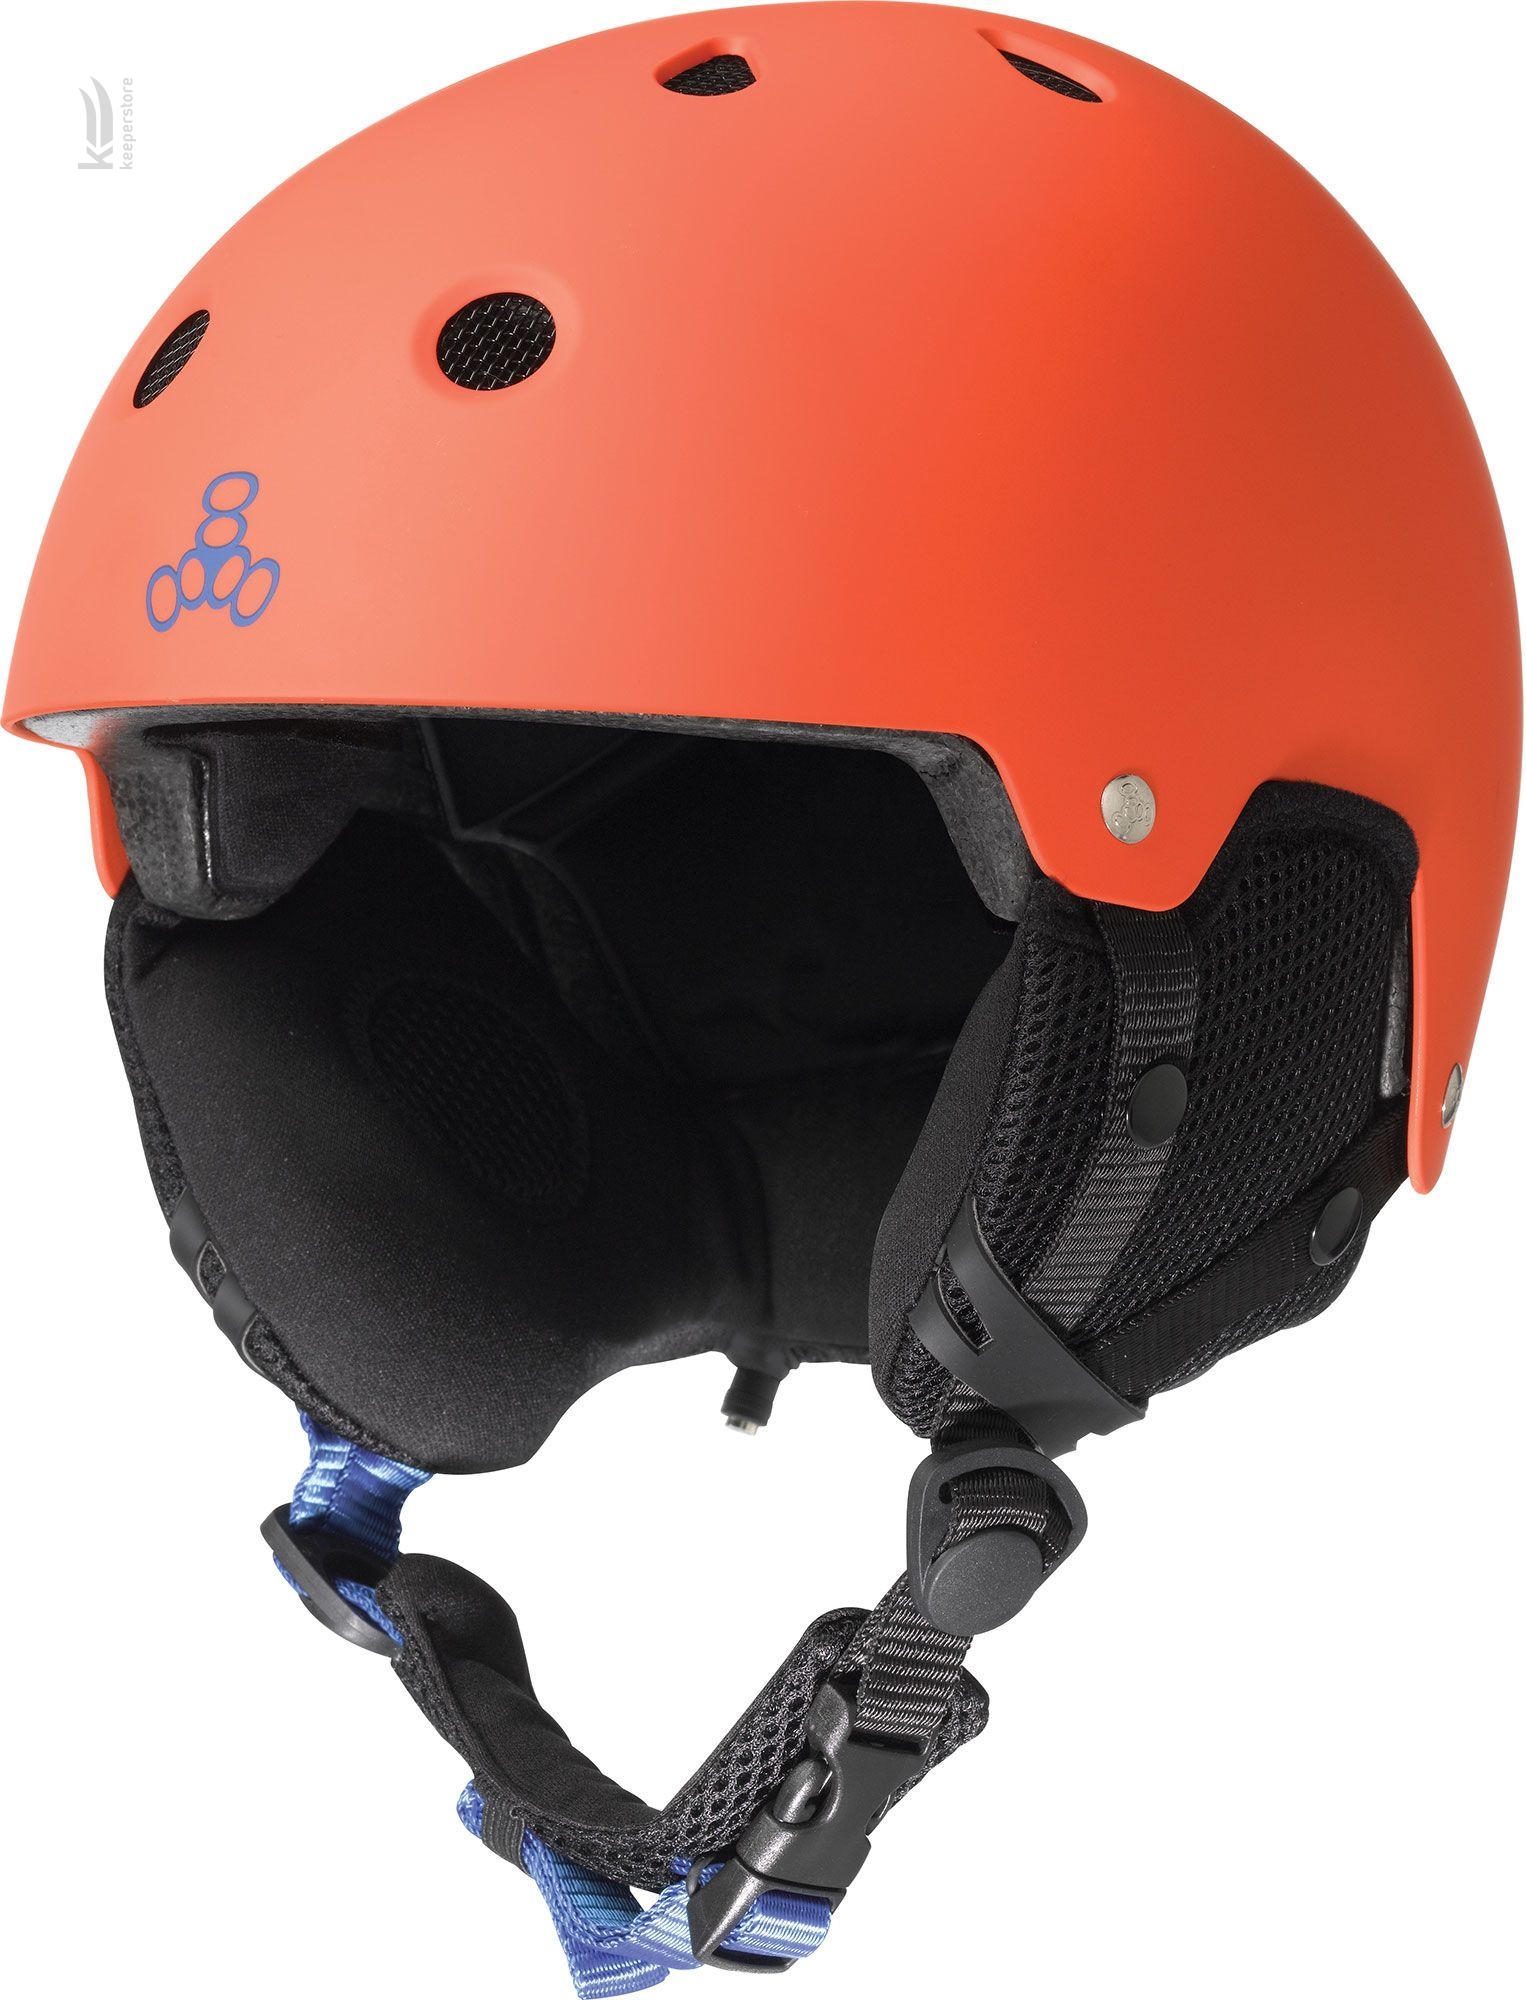 Защитный шлем с аудиосистемой Triple8 Audio Snow Helmet Orange